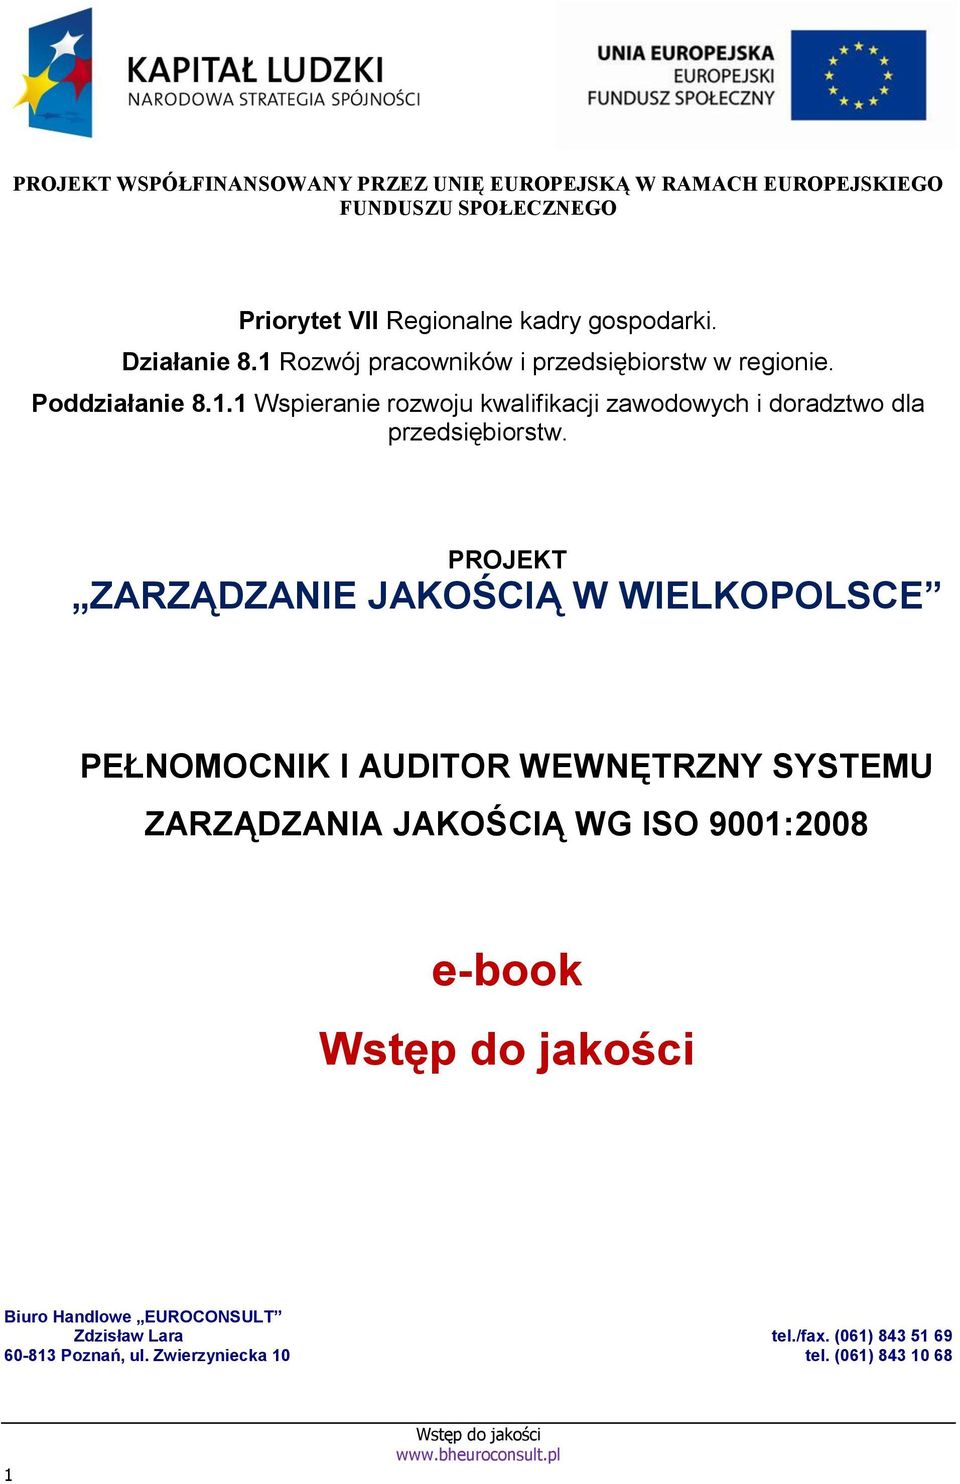 PROJEKT ZARZĄDZANIE JAKOŚCIĄ W WIELKOPOLSCE PEŁNOMOCNIK I AUDITOR WEWNĘTRZNY SYSTEMU ZARZĄDZANIA JAKOŚCIĄ WG ISO 9001:2008 e-book Biuro